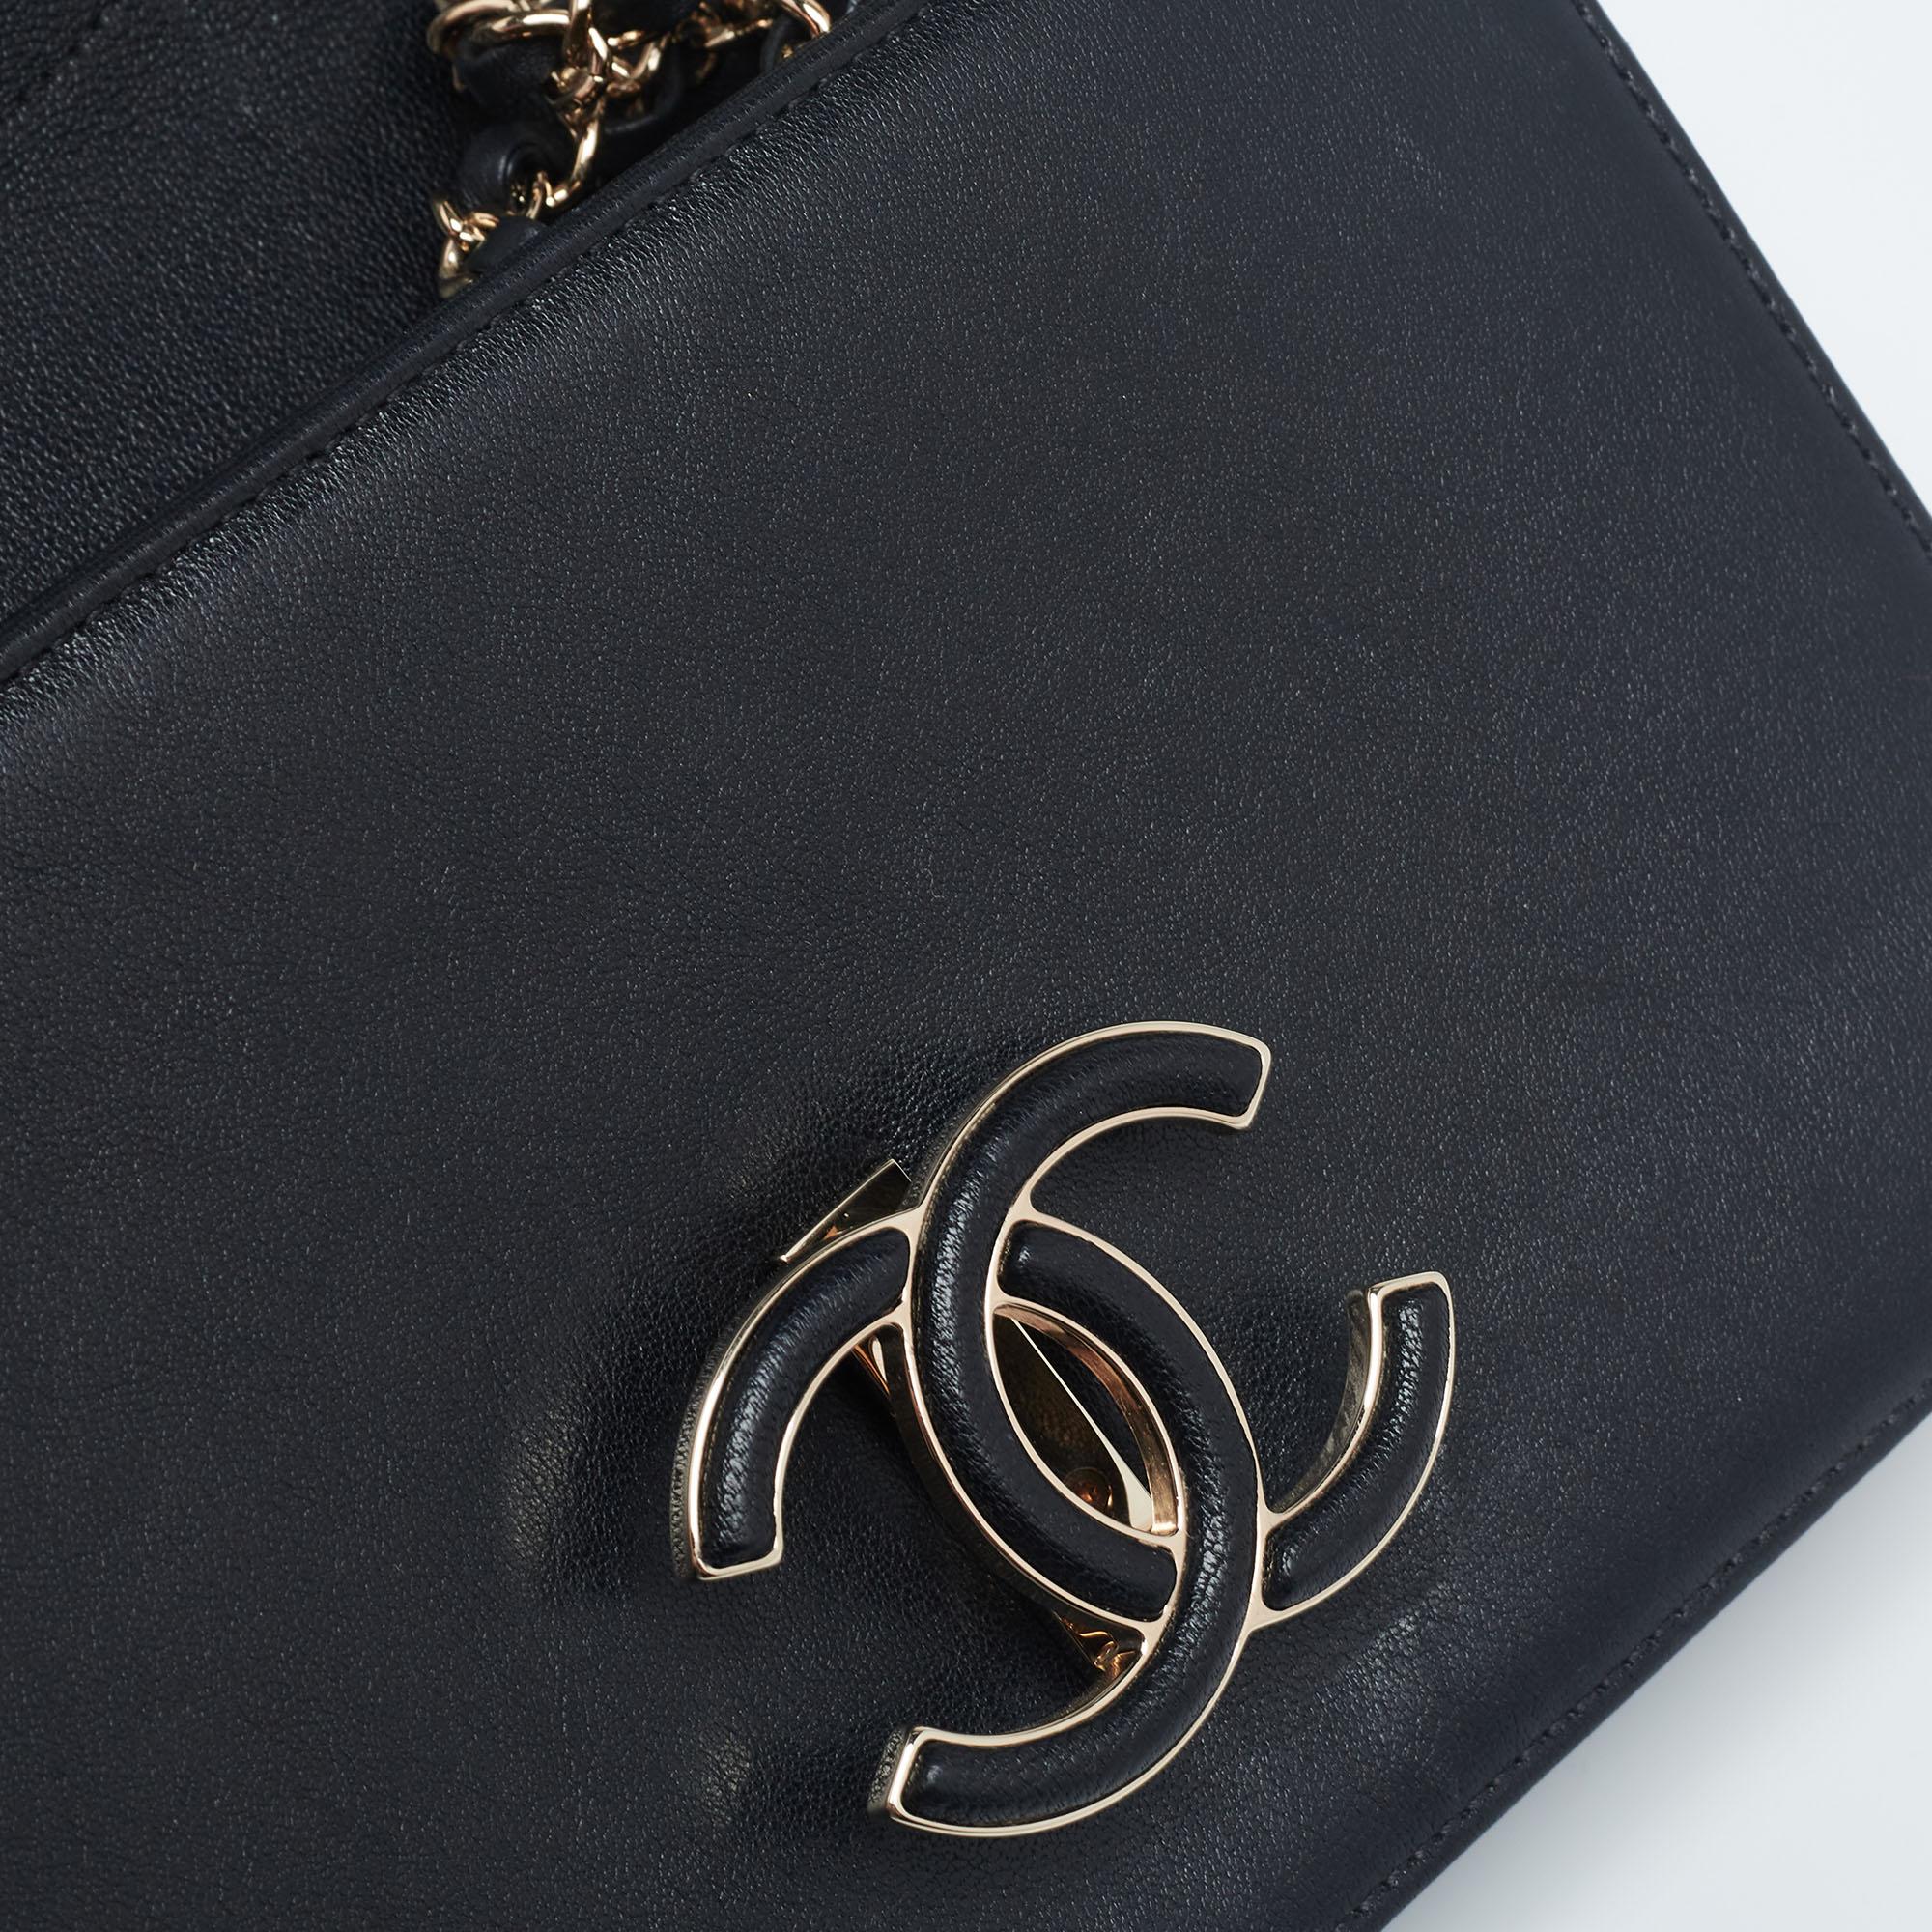 Chanel Black/Gold Chevron Leather CC Subtle Flap Bag 2